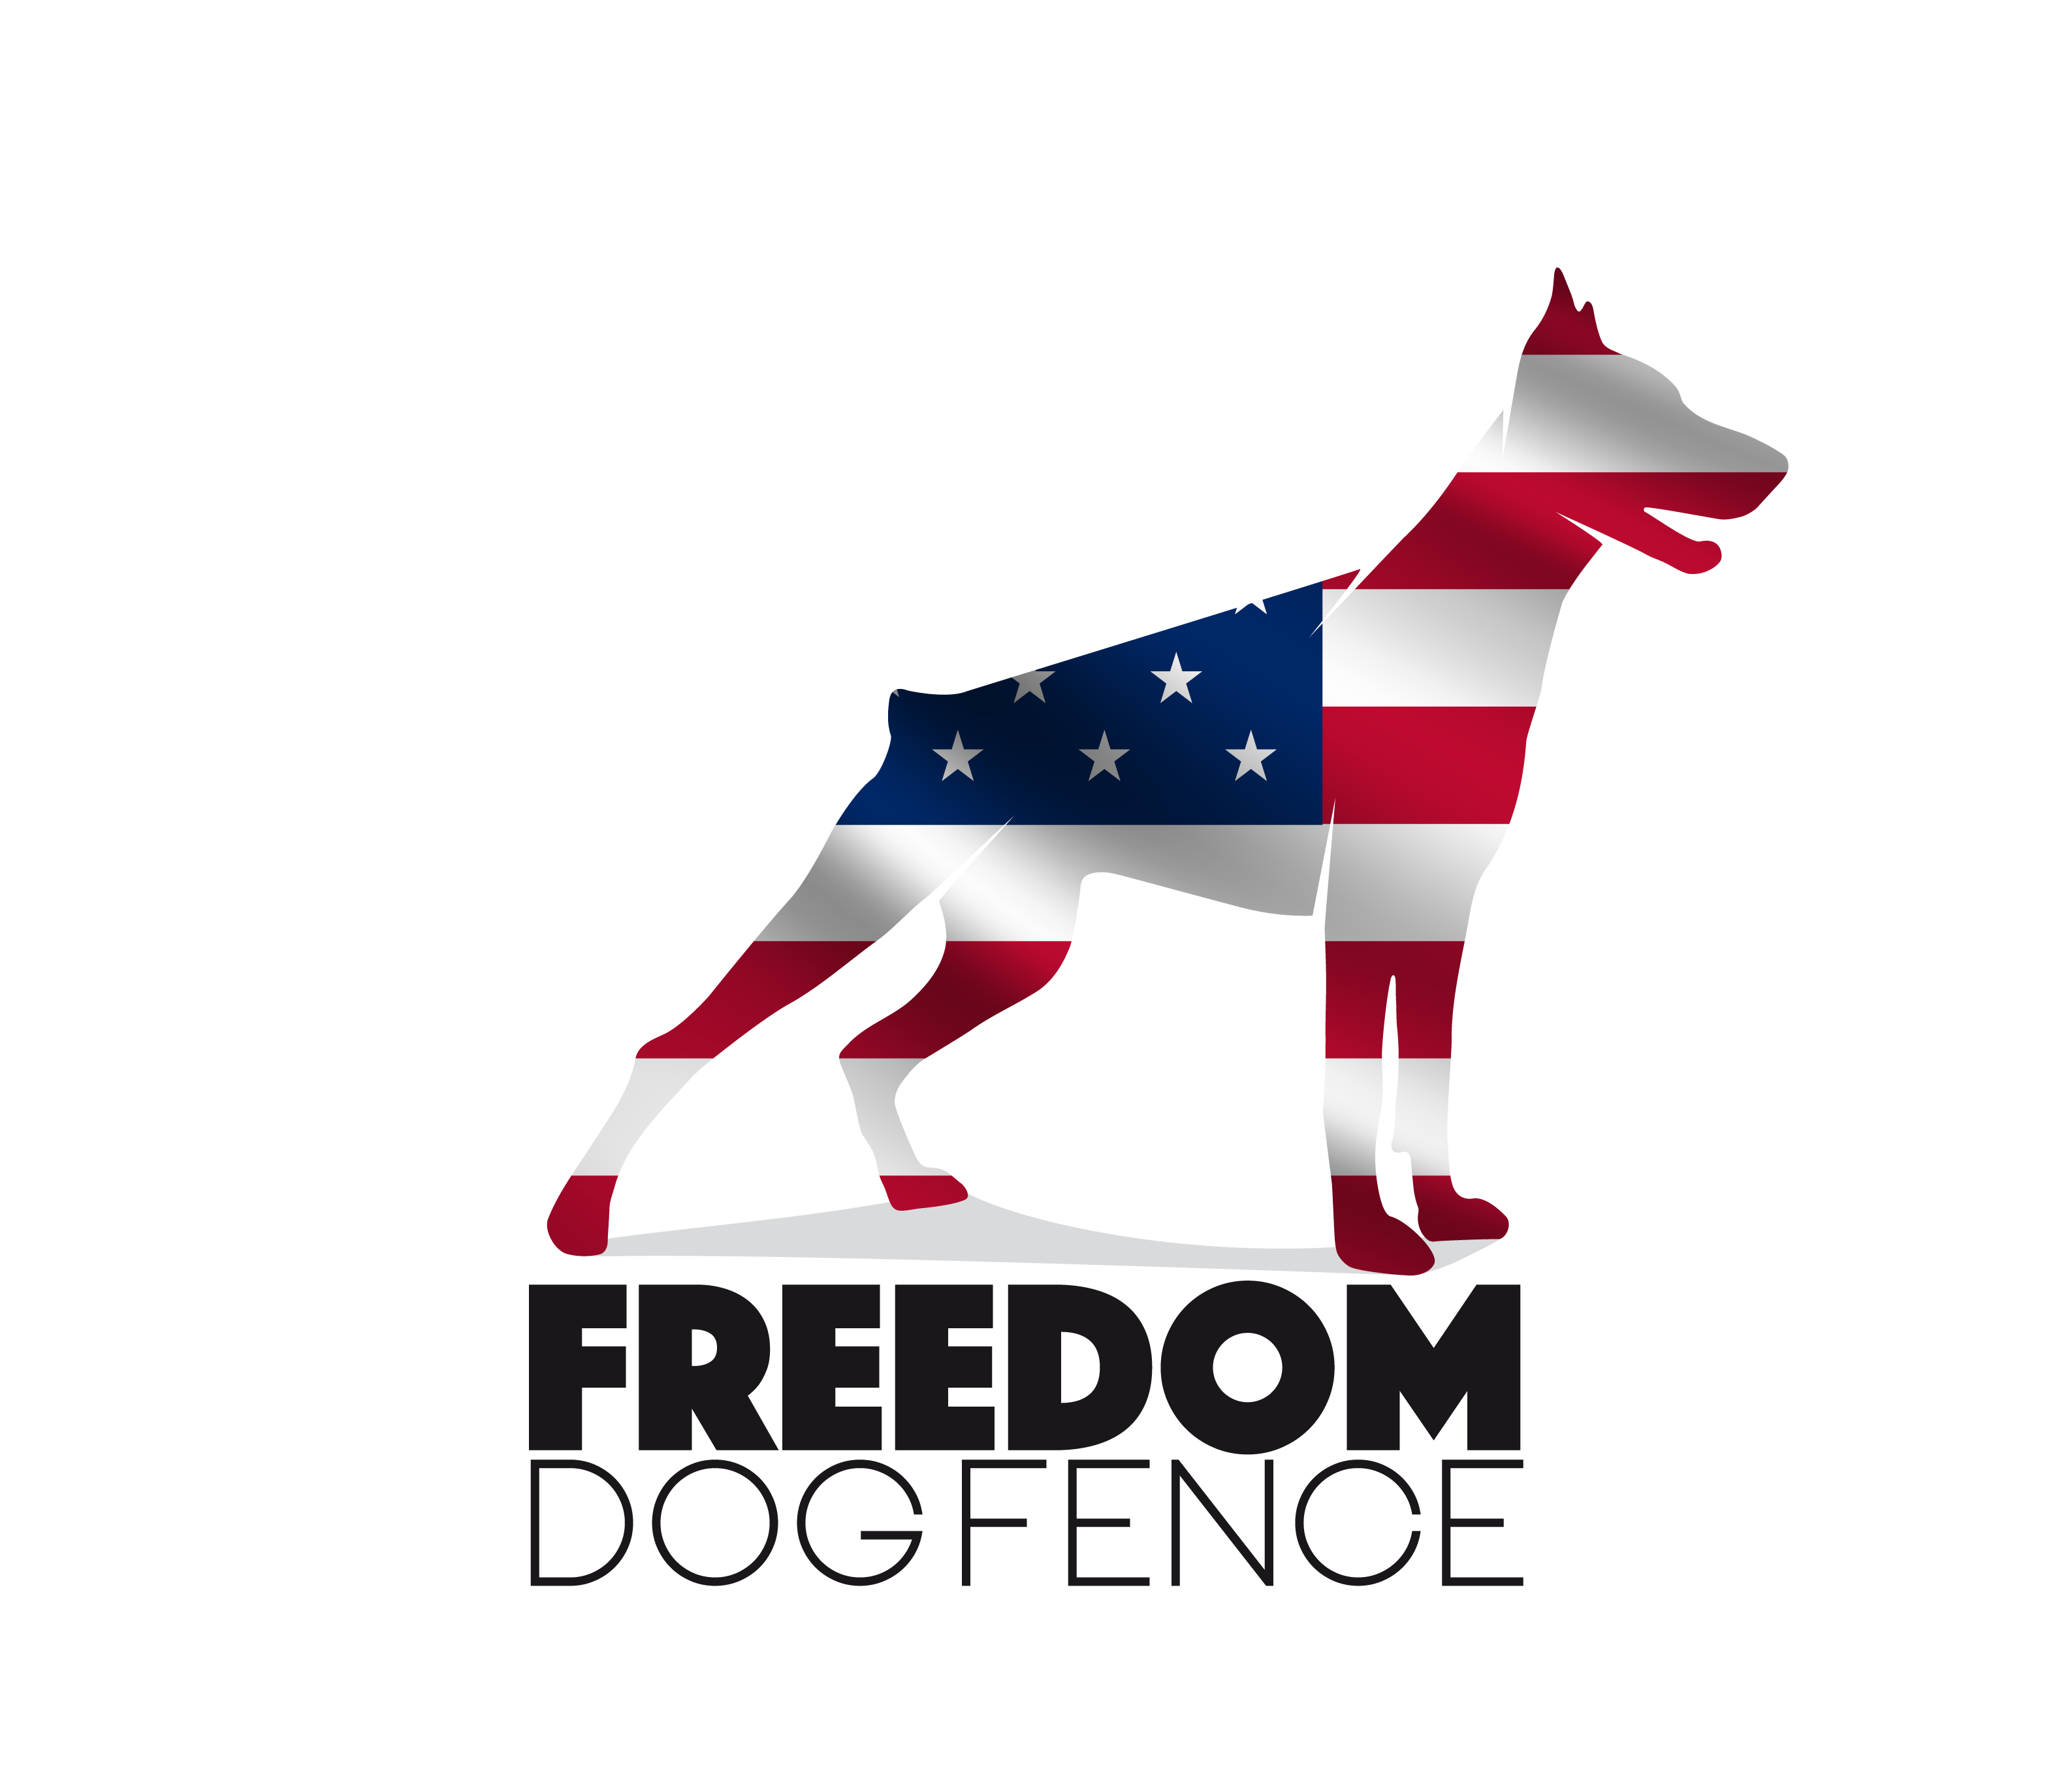 Freedom Dog Fence Logo